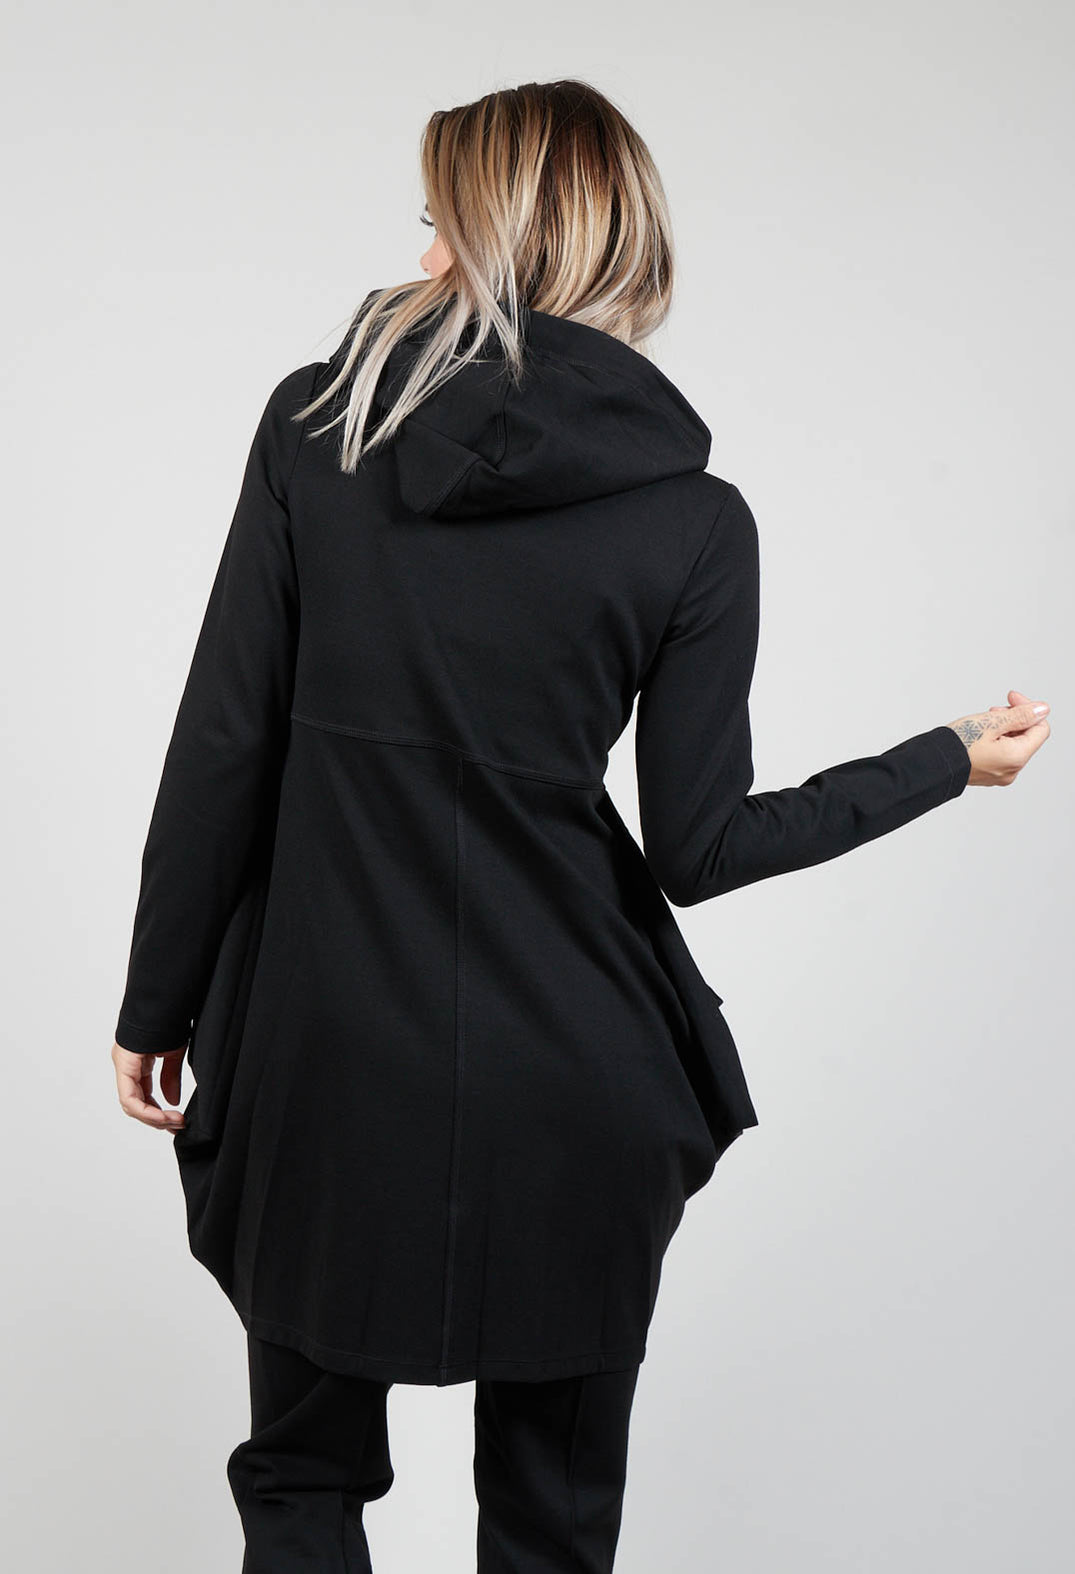 Bind Zip-Up Hooded Jacket in Black